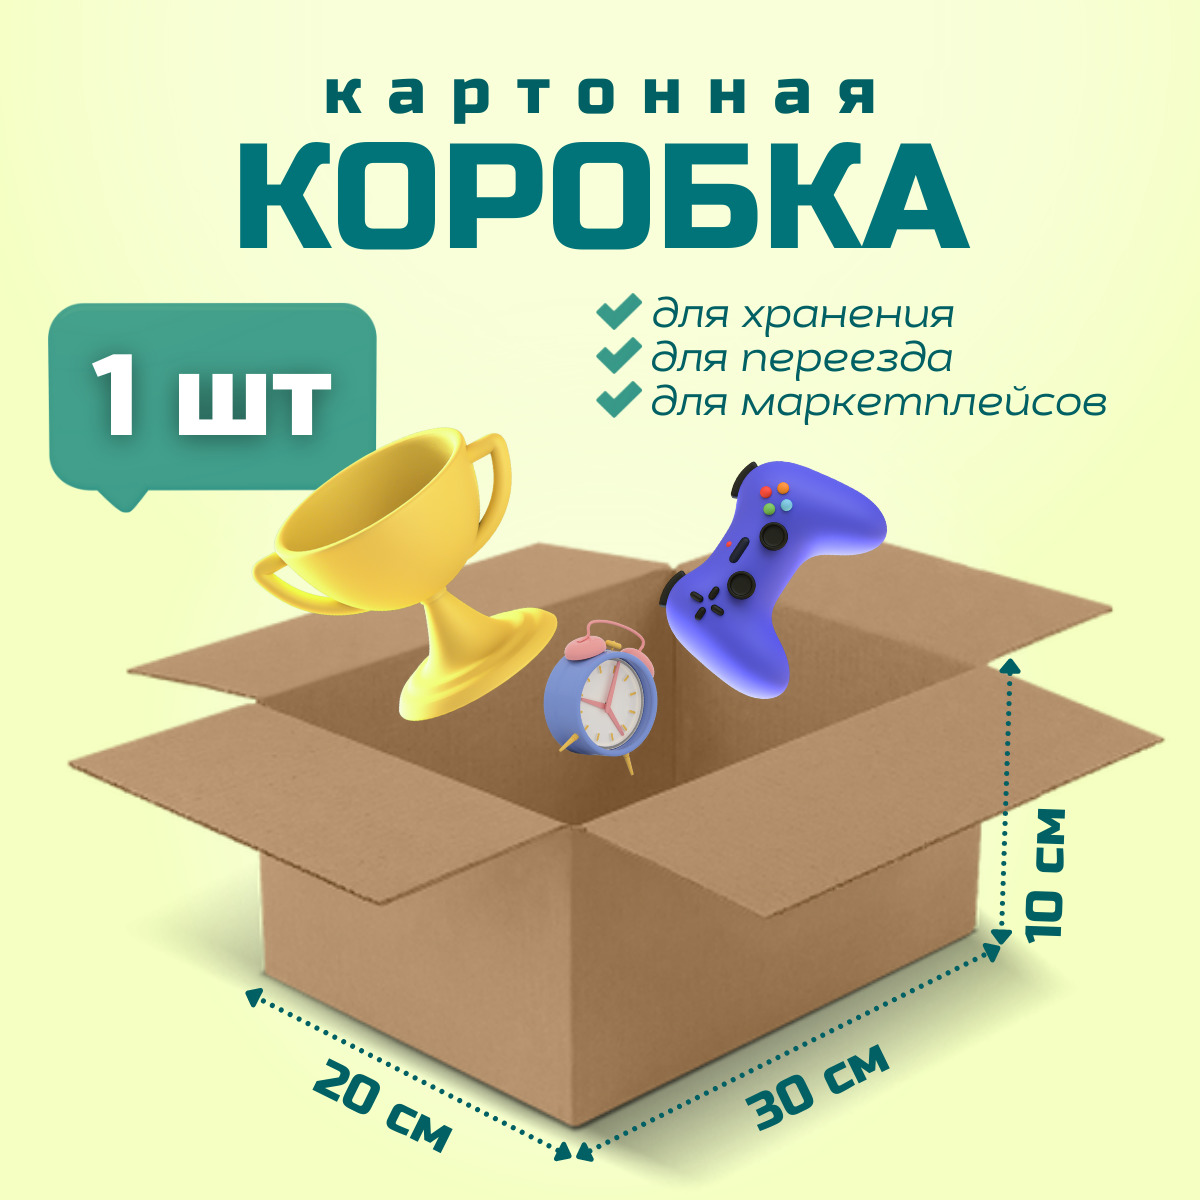 Коробка для переезда и хранения вещей PackVigoda 30х20х10см картон 1 шт